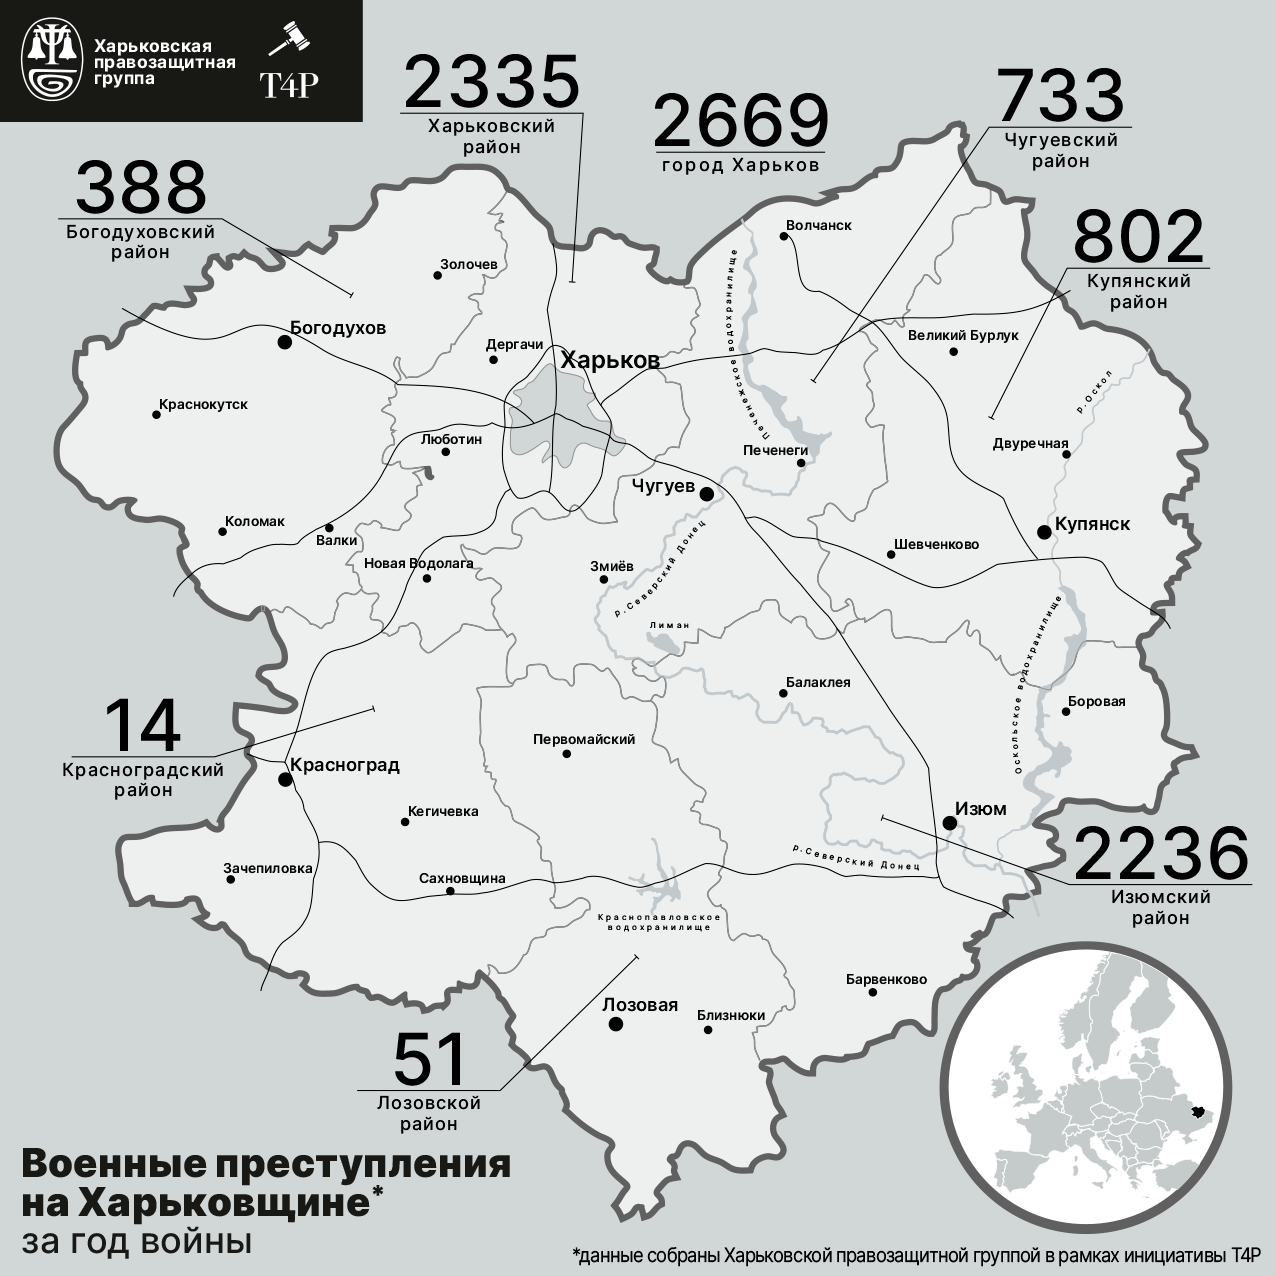 Военные преступления в Харьковской области за год полномасштабной войны © Сергей Прыткин / ХПГ